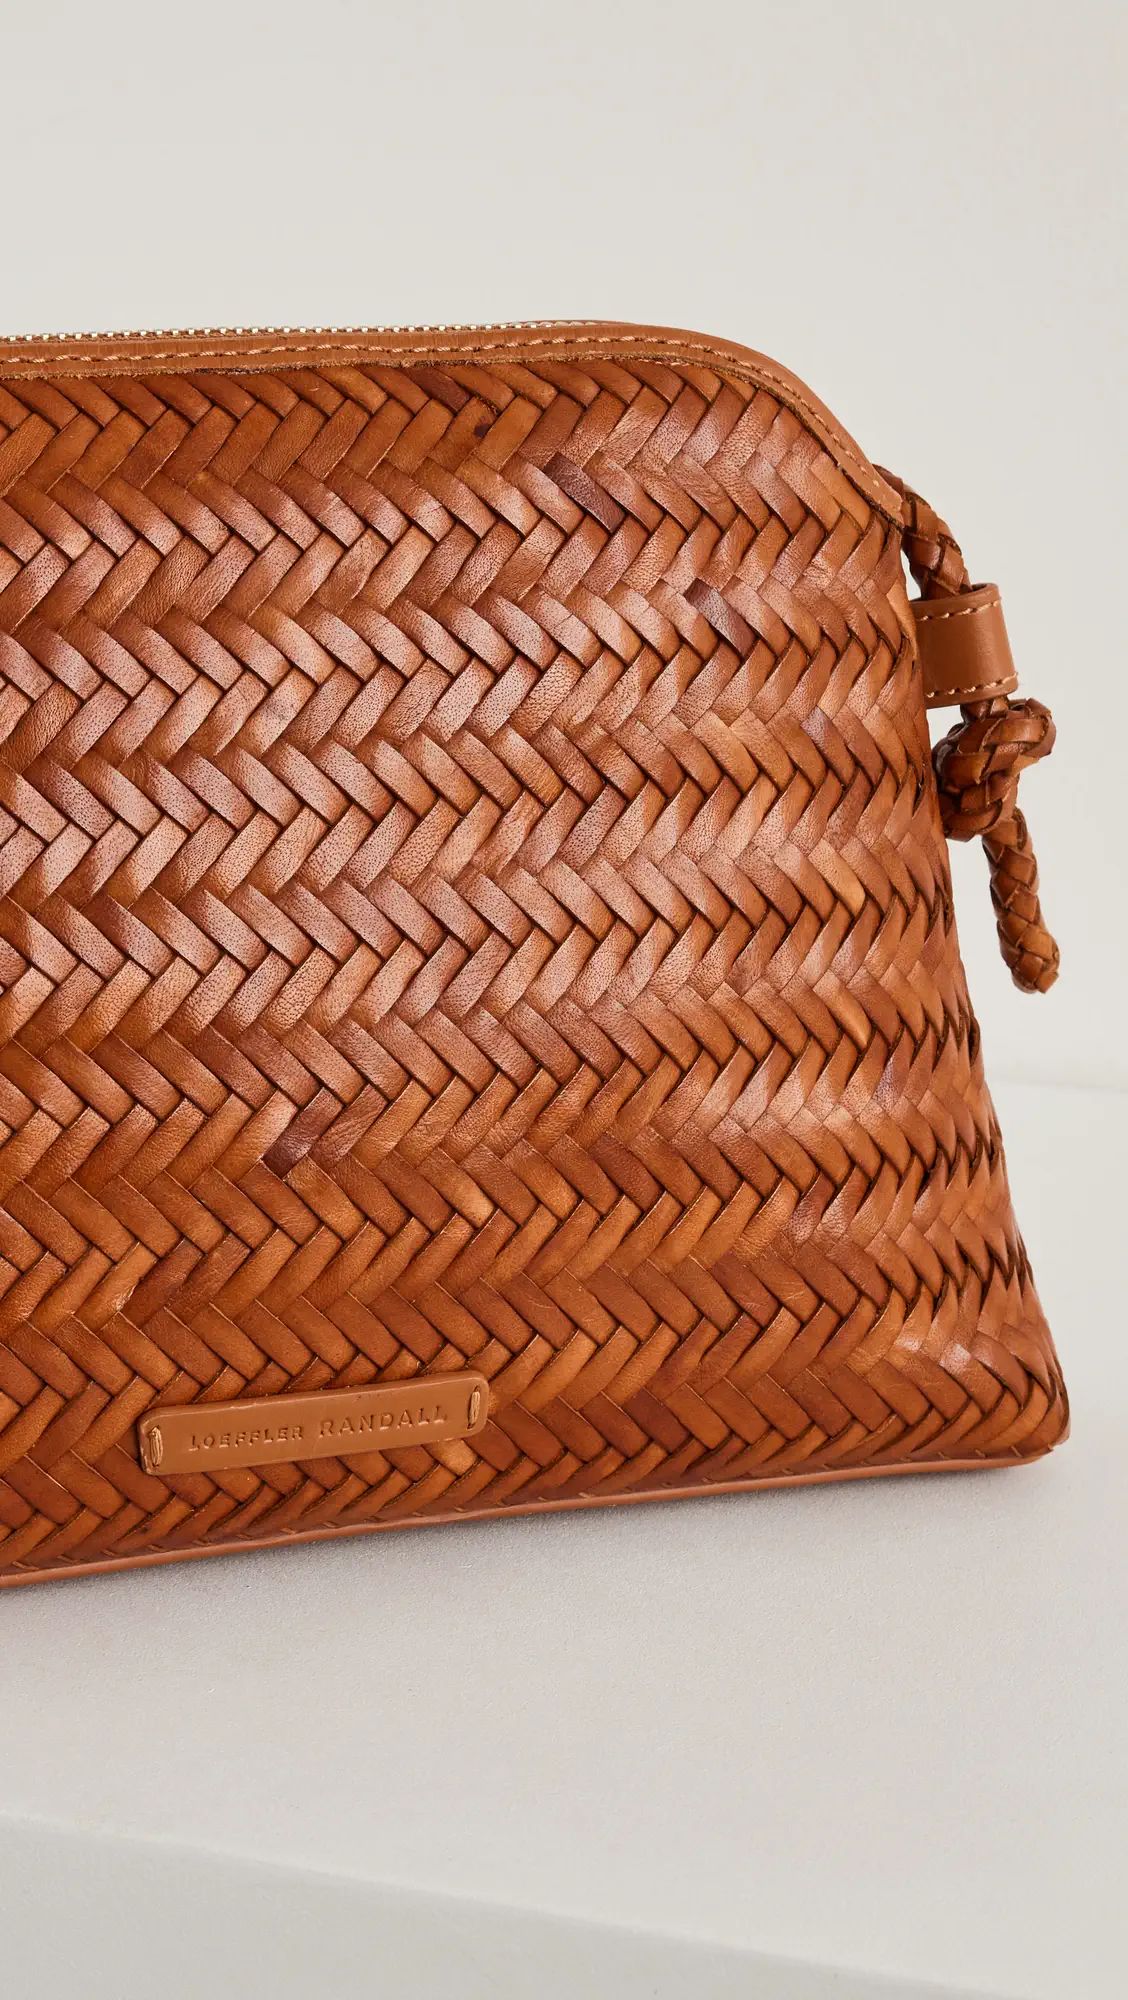 Loeffler Randall Mallory Woven Crossbody Bag | Shopbop | Shopbop